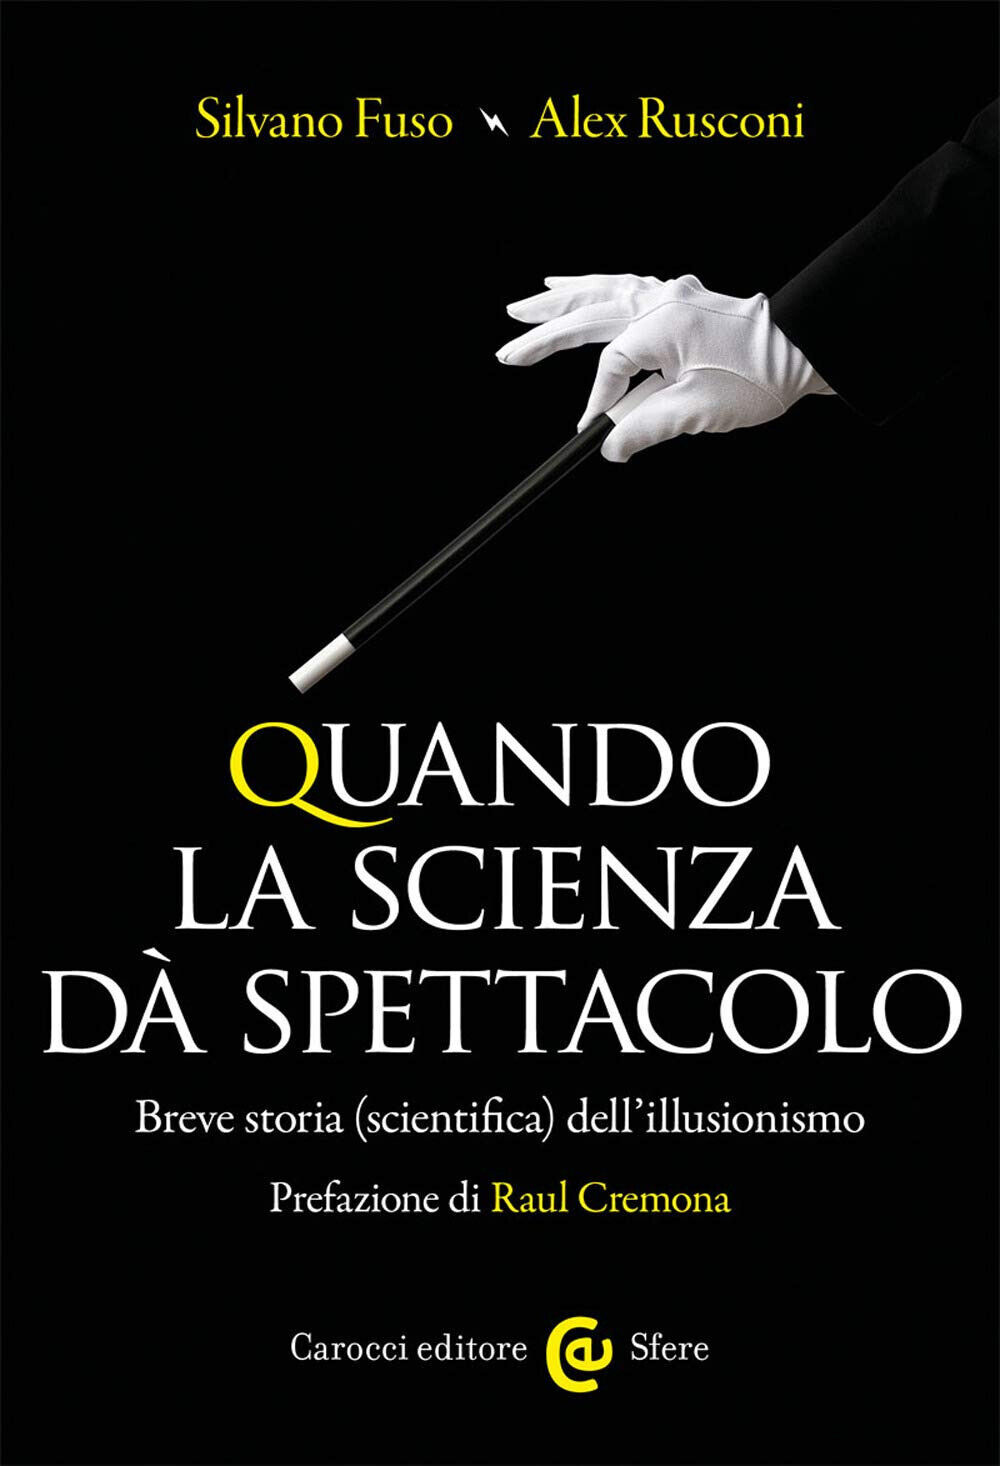 Quando la scienza d? spettacolo - Silvano Fuso, Alex Rusconi - Carocci, 2020 libro usato